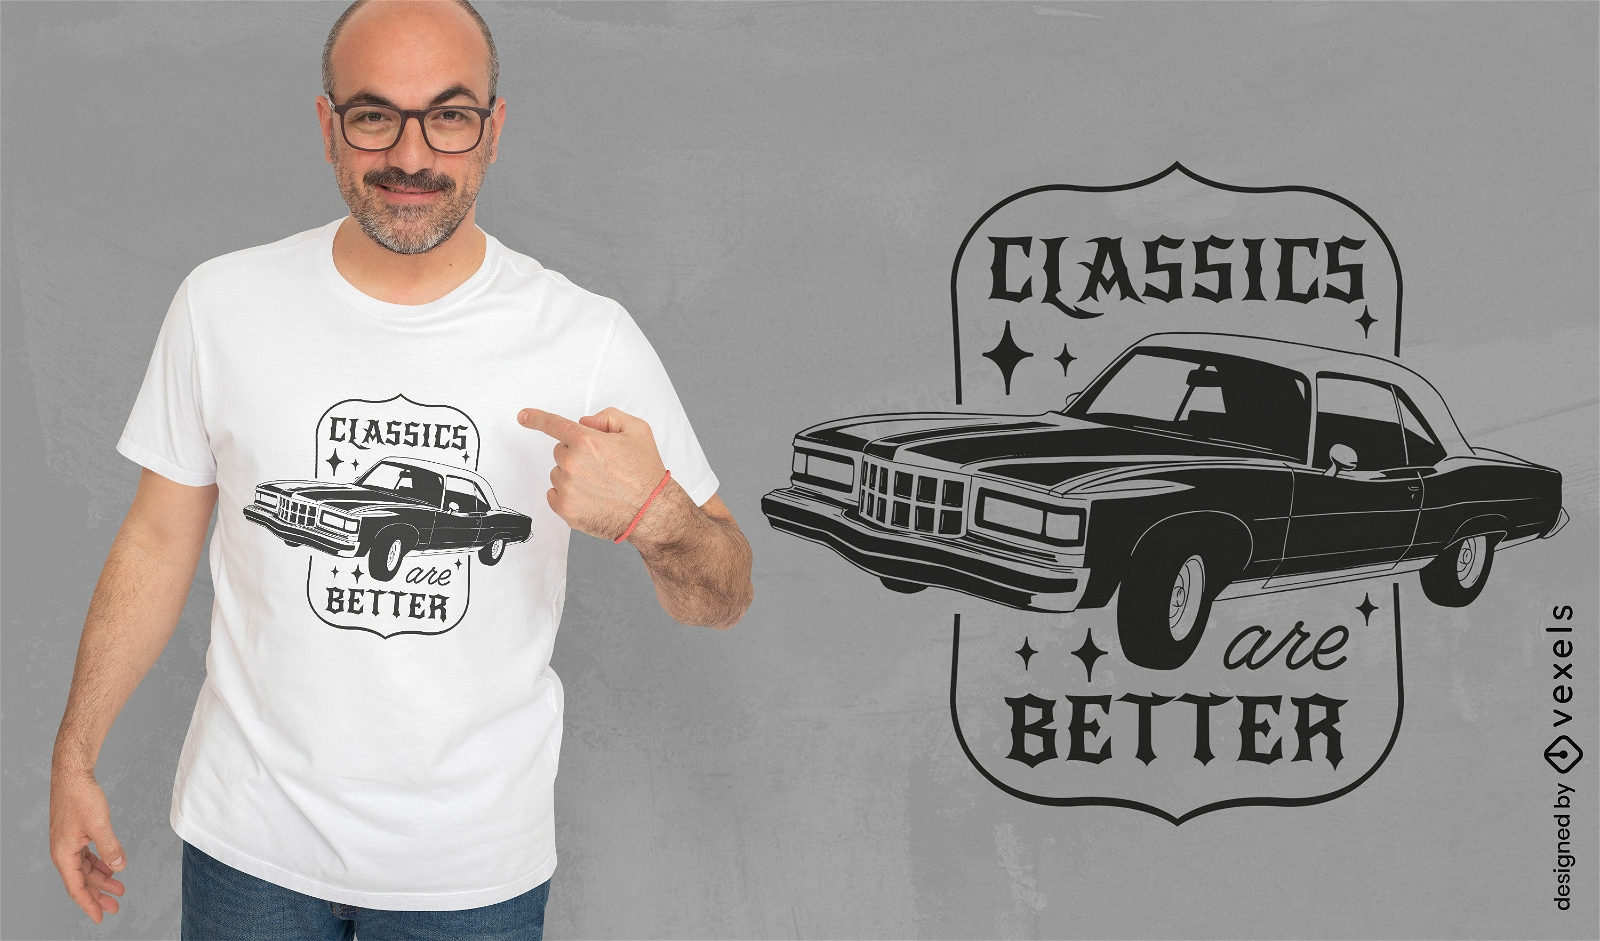 Diseño clásico de camiseta de transporte de automóviles.